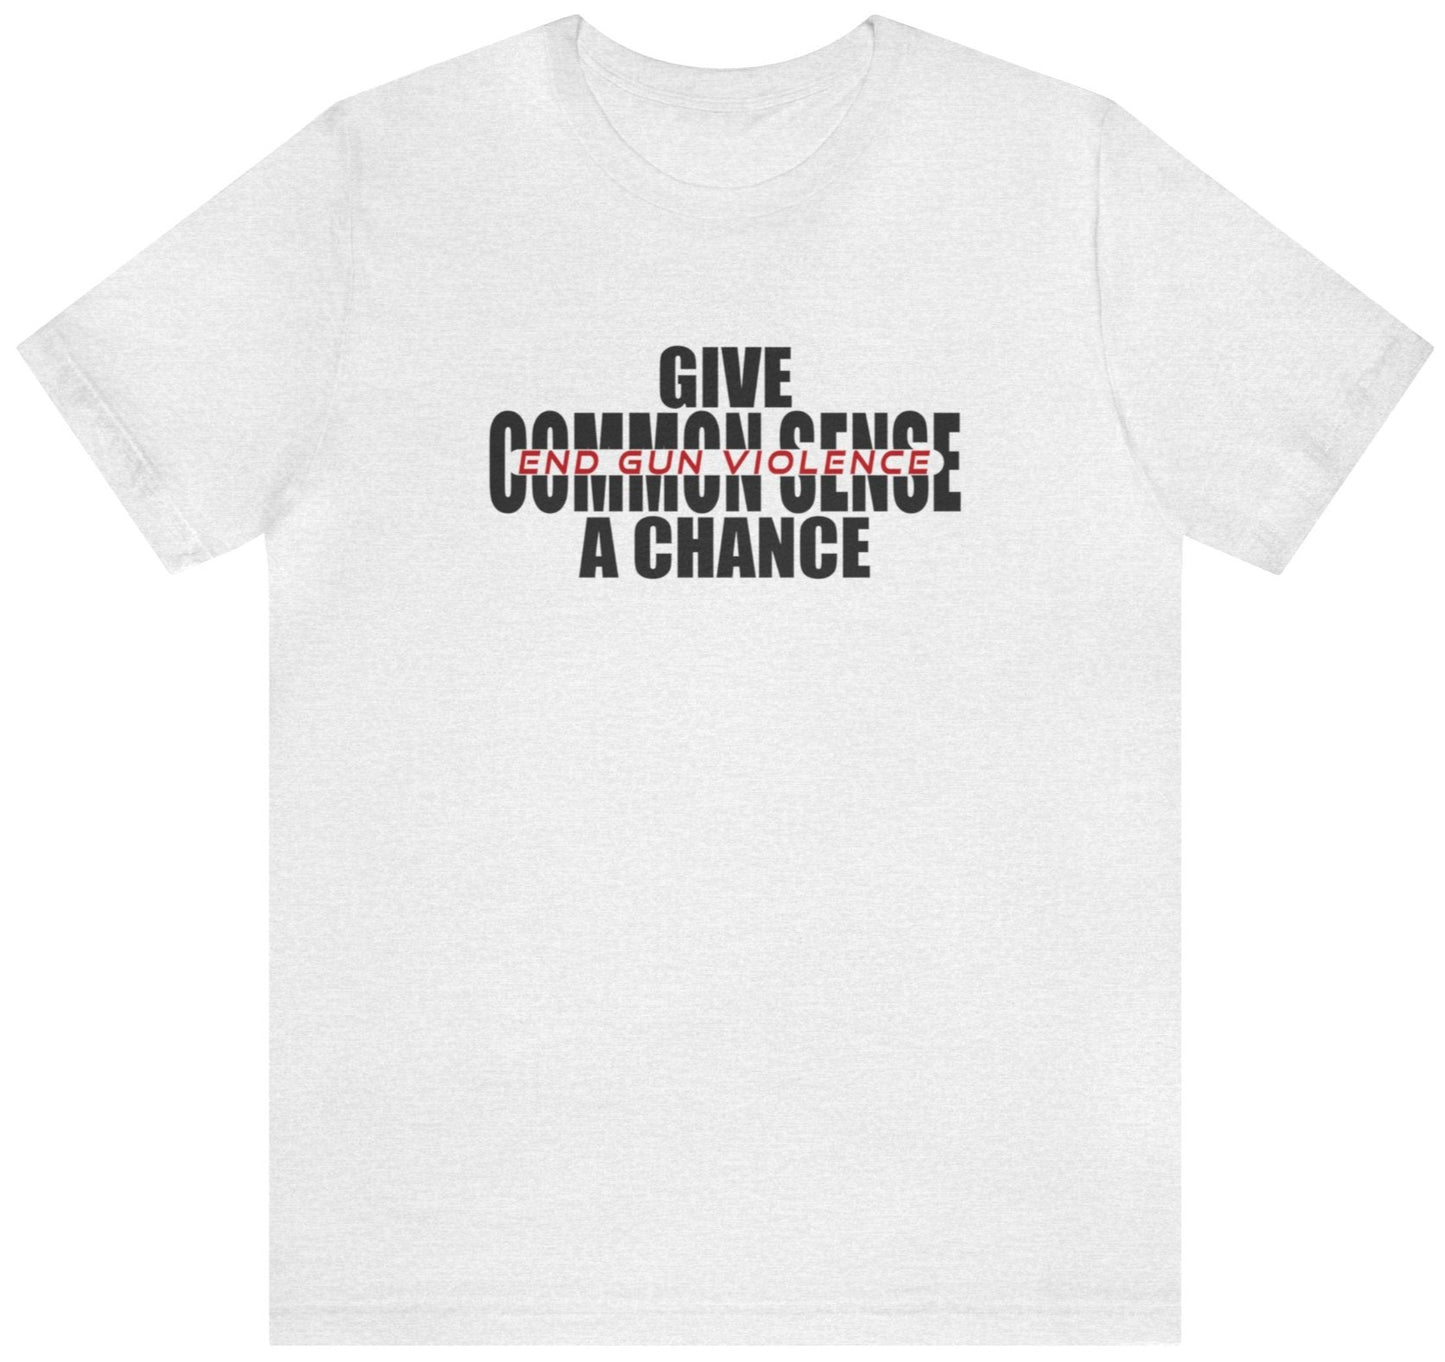 Gun reform t-shirt